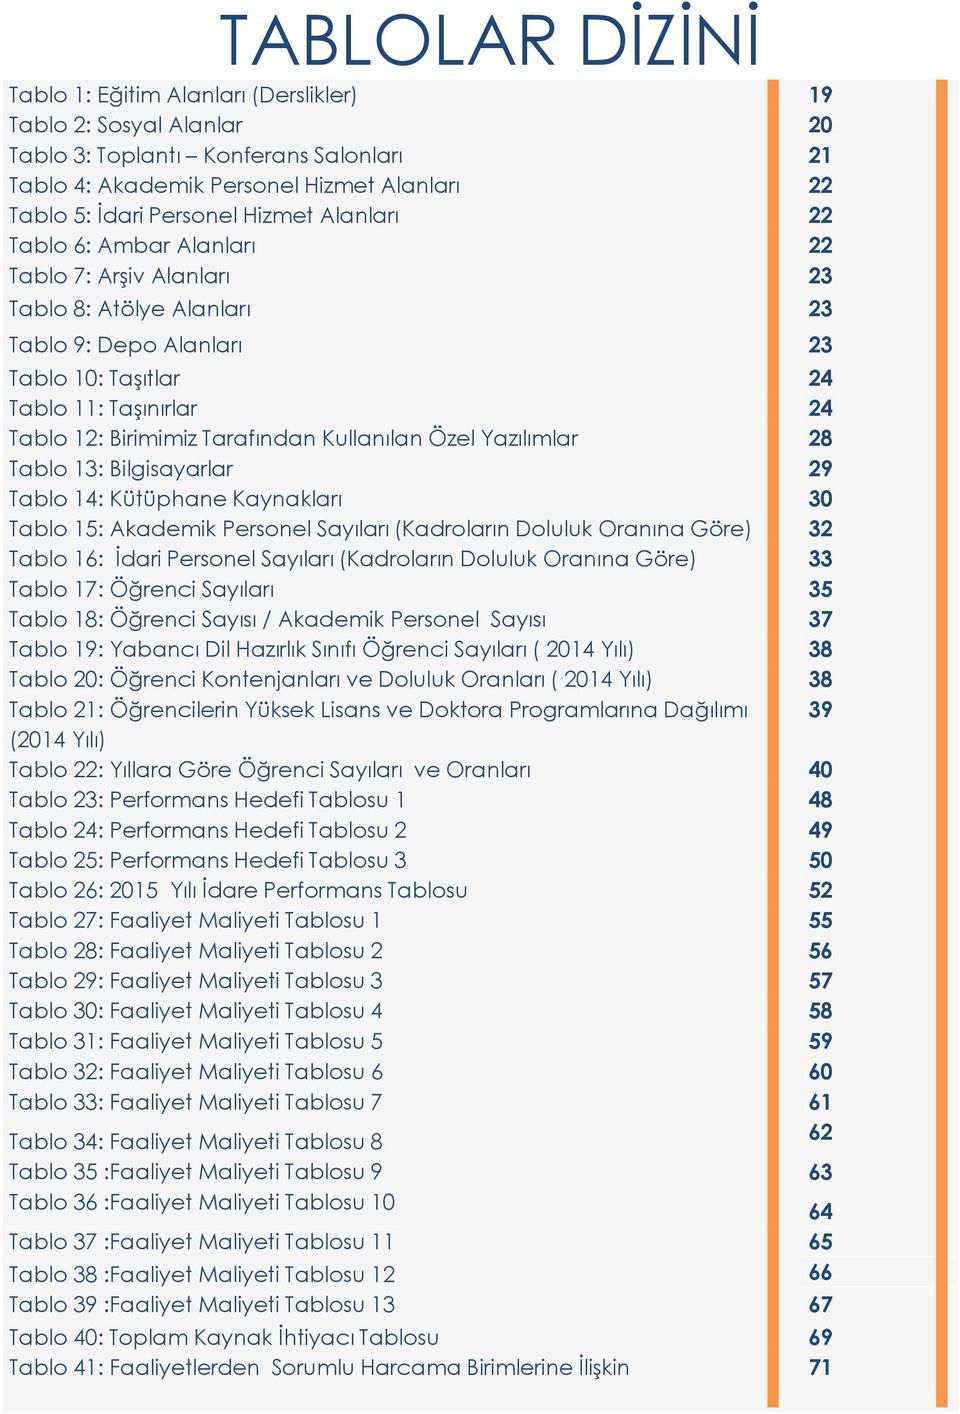 Tarafından Kullanılan Özel Yazılımlar 28 Tablo 13: Bilgisayarlar 29 Tablo 14: Kütüphane Kaynakları 30 Tablo 15: Akademik Personel Sayıları (Kadroların Doluluk Oranına Göre) 32 Tablo 16: İdari